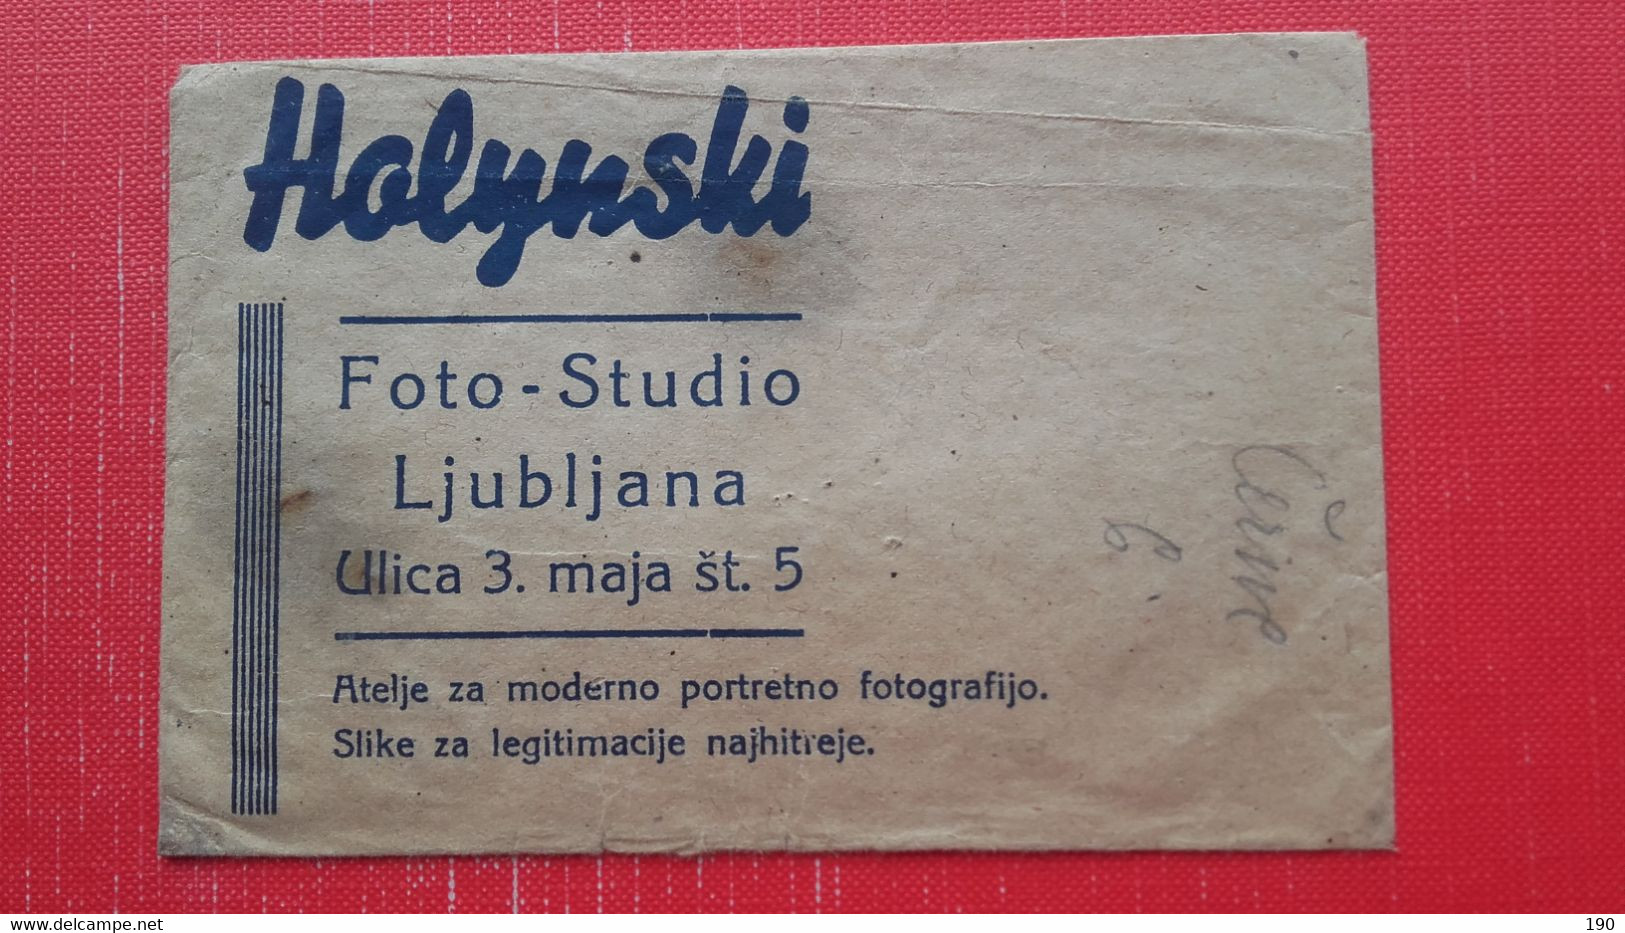 Ljubljana.Holynski.Foto-Studio.Paper Bag - Supplies And Equipment